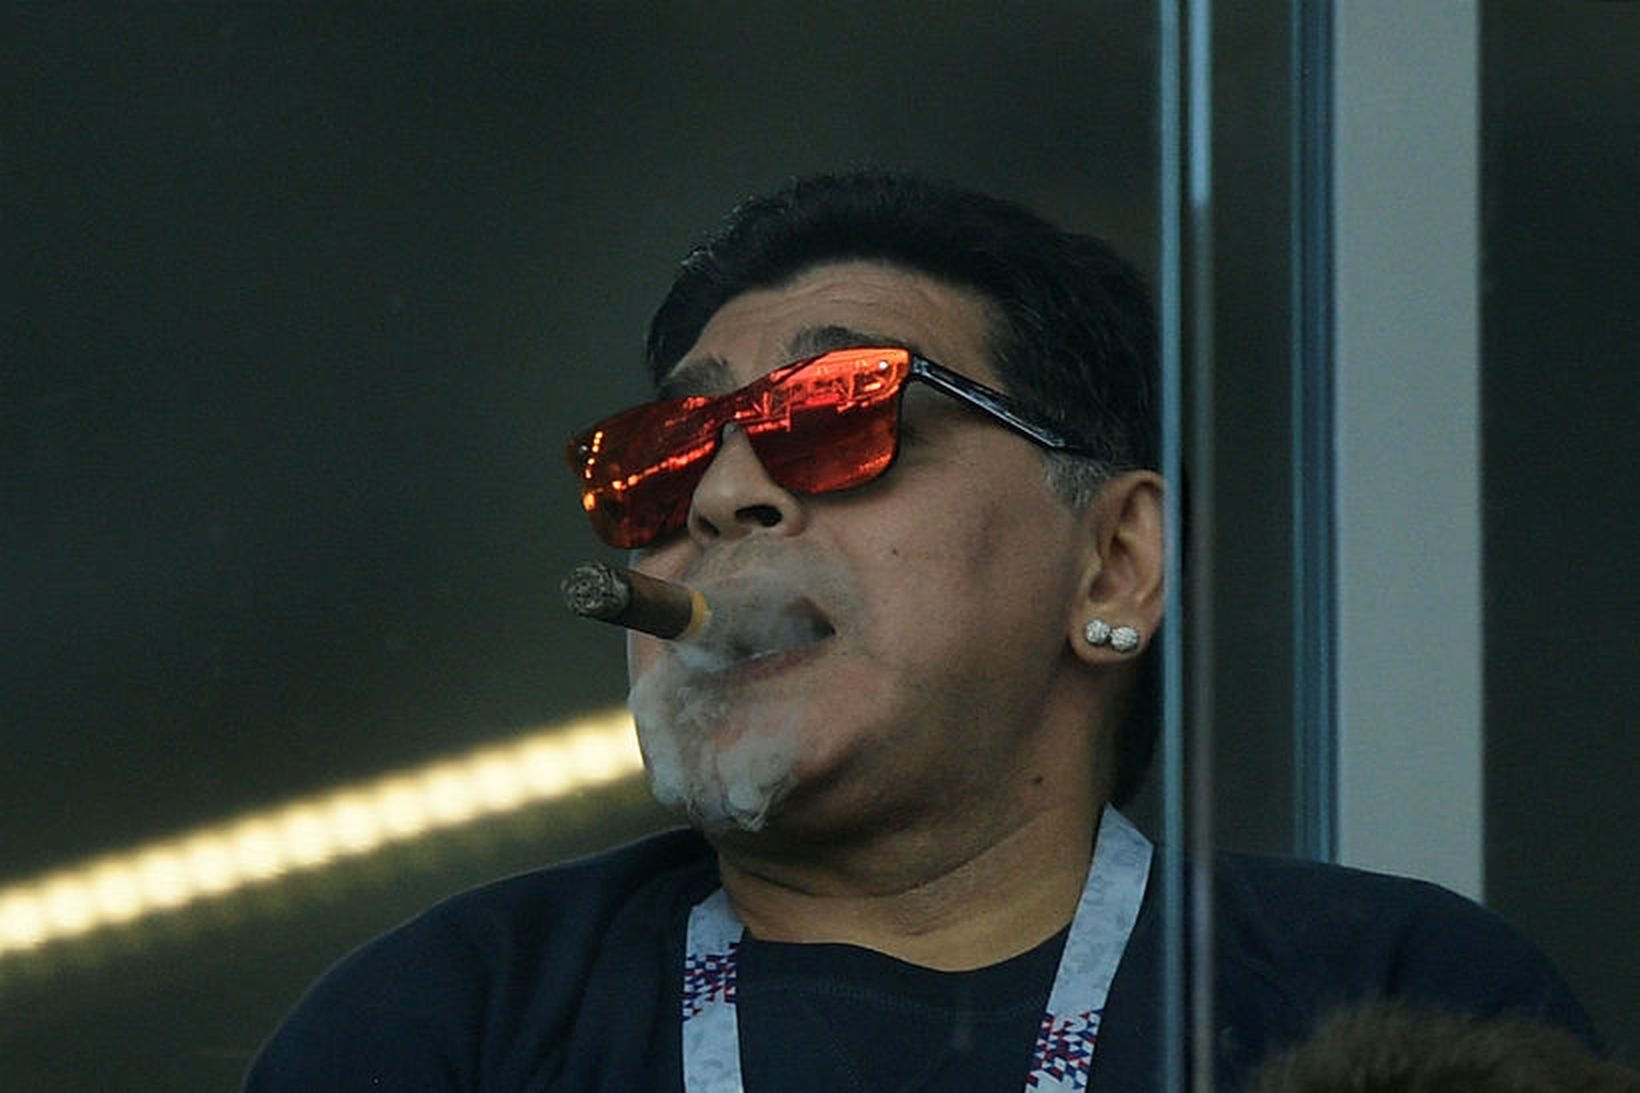 Athygli vakti að Maradona kveikti sér í vindli í stúkunni, …